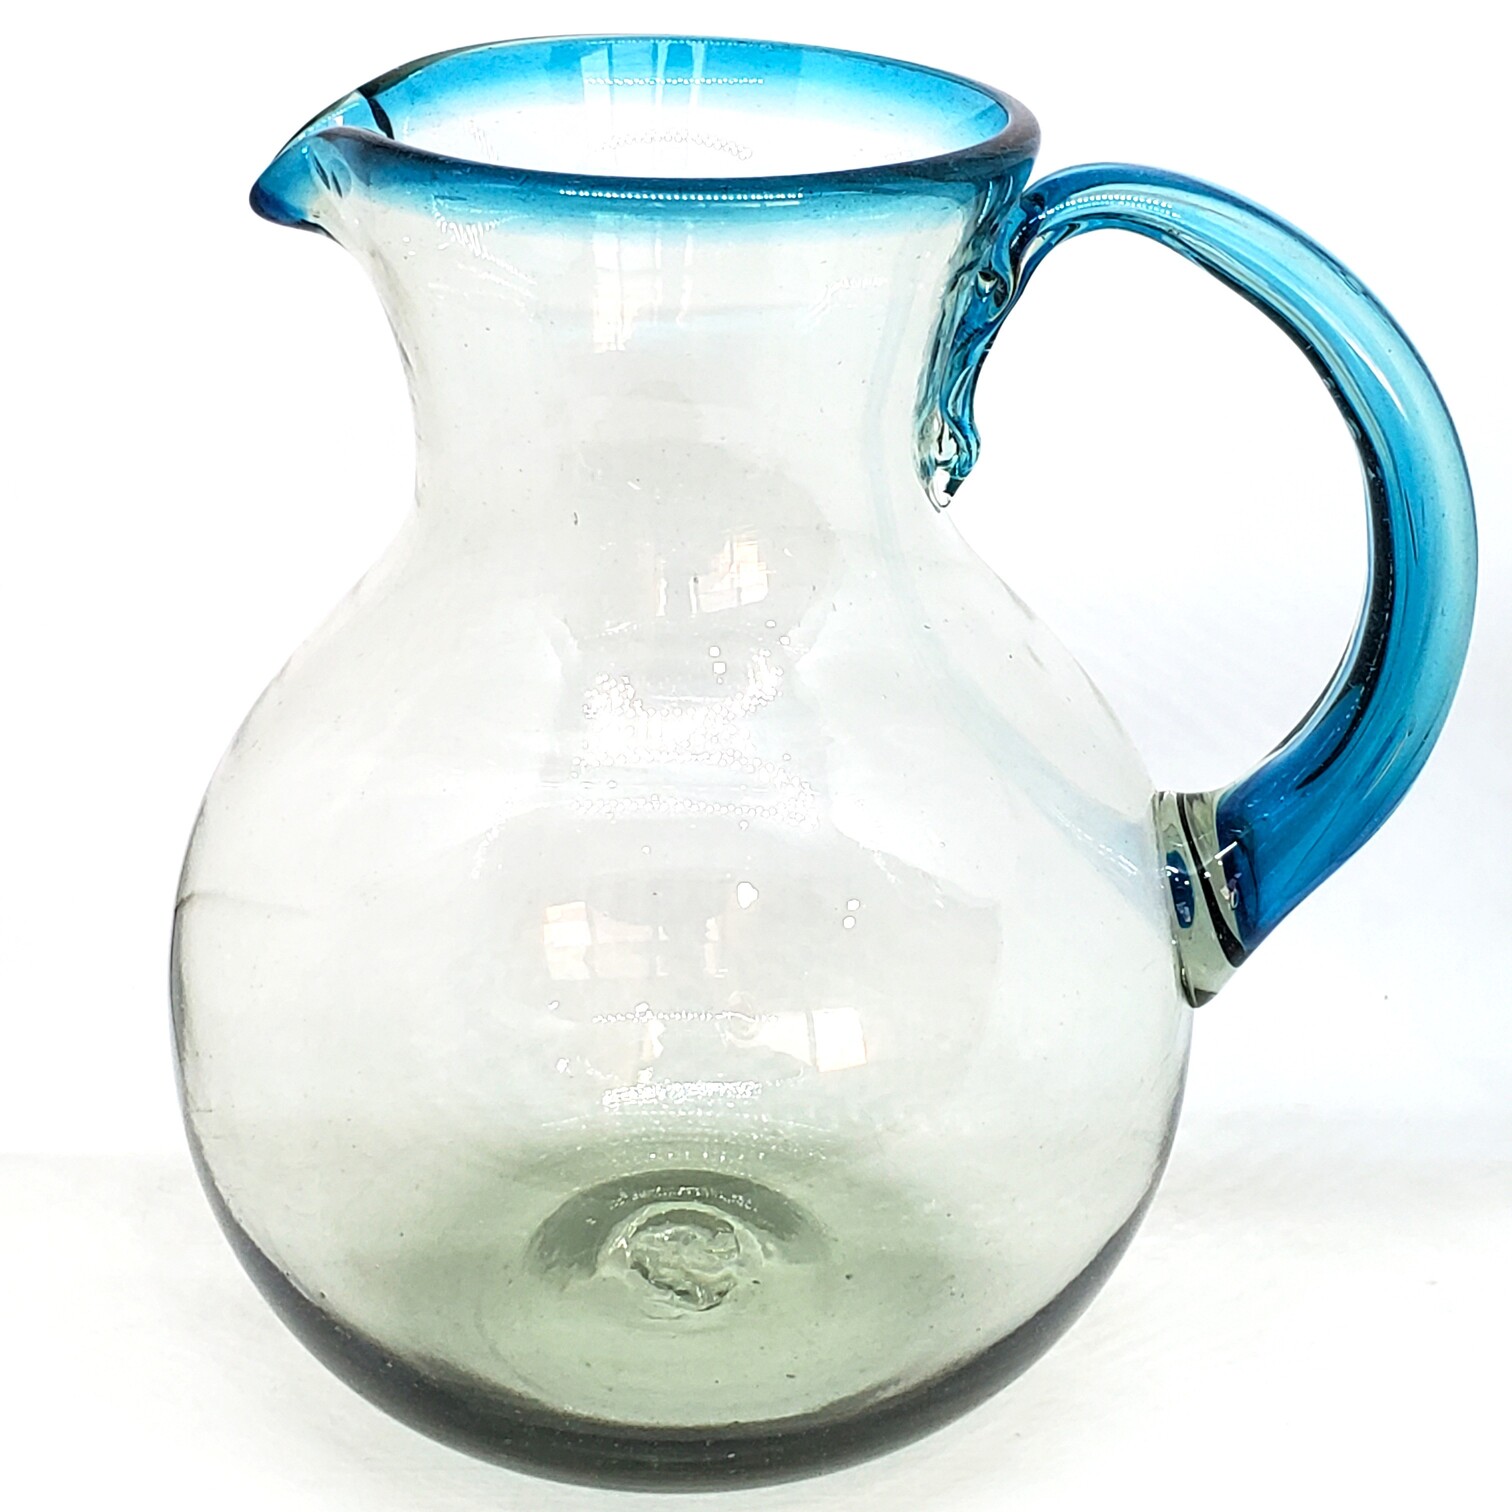 Ofertas / Jarra de vidrio soplado con borde azul aqua / �sta moderna jarra viene decorada con un borde en azul aqua.